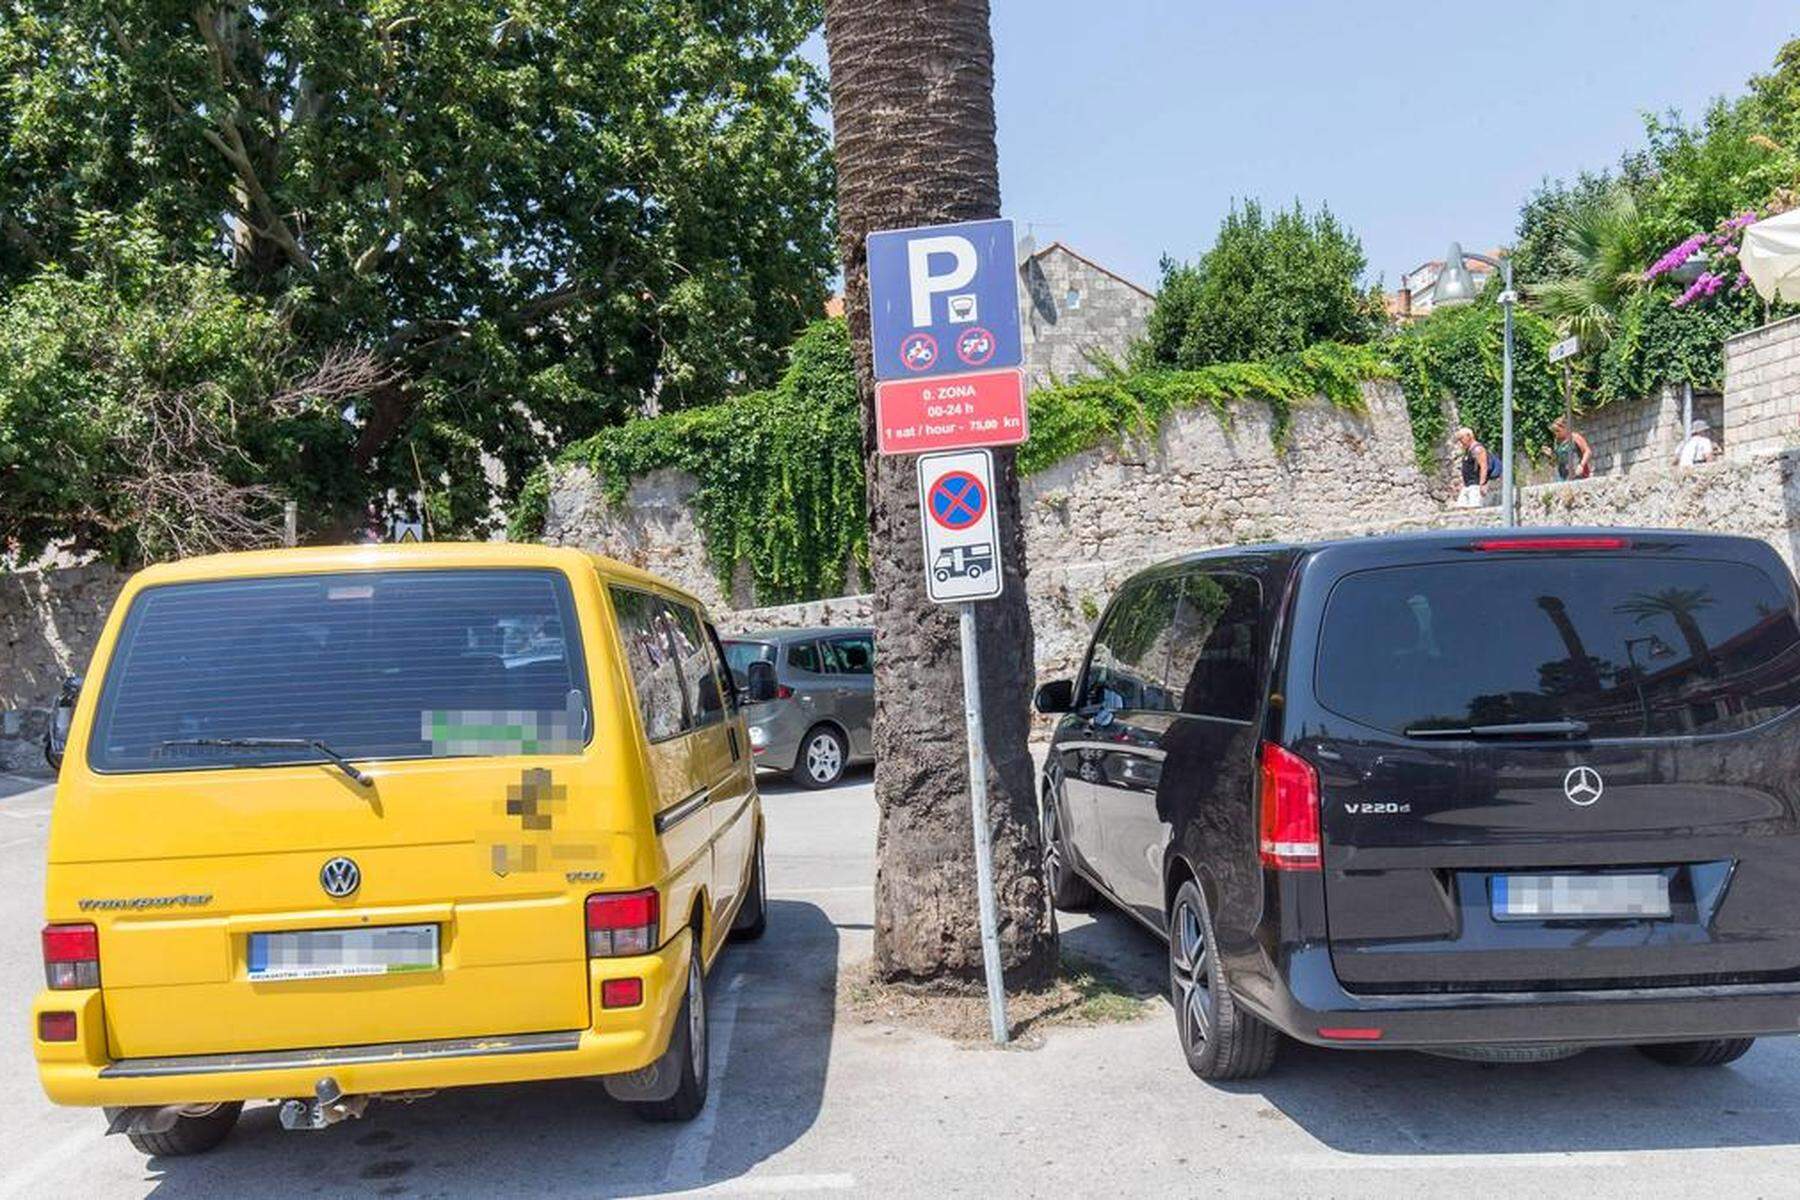 Alpe-Adria-Newsletter: Achtung: Hier wird das Parken teuer